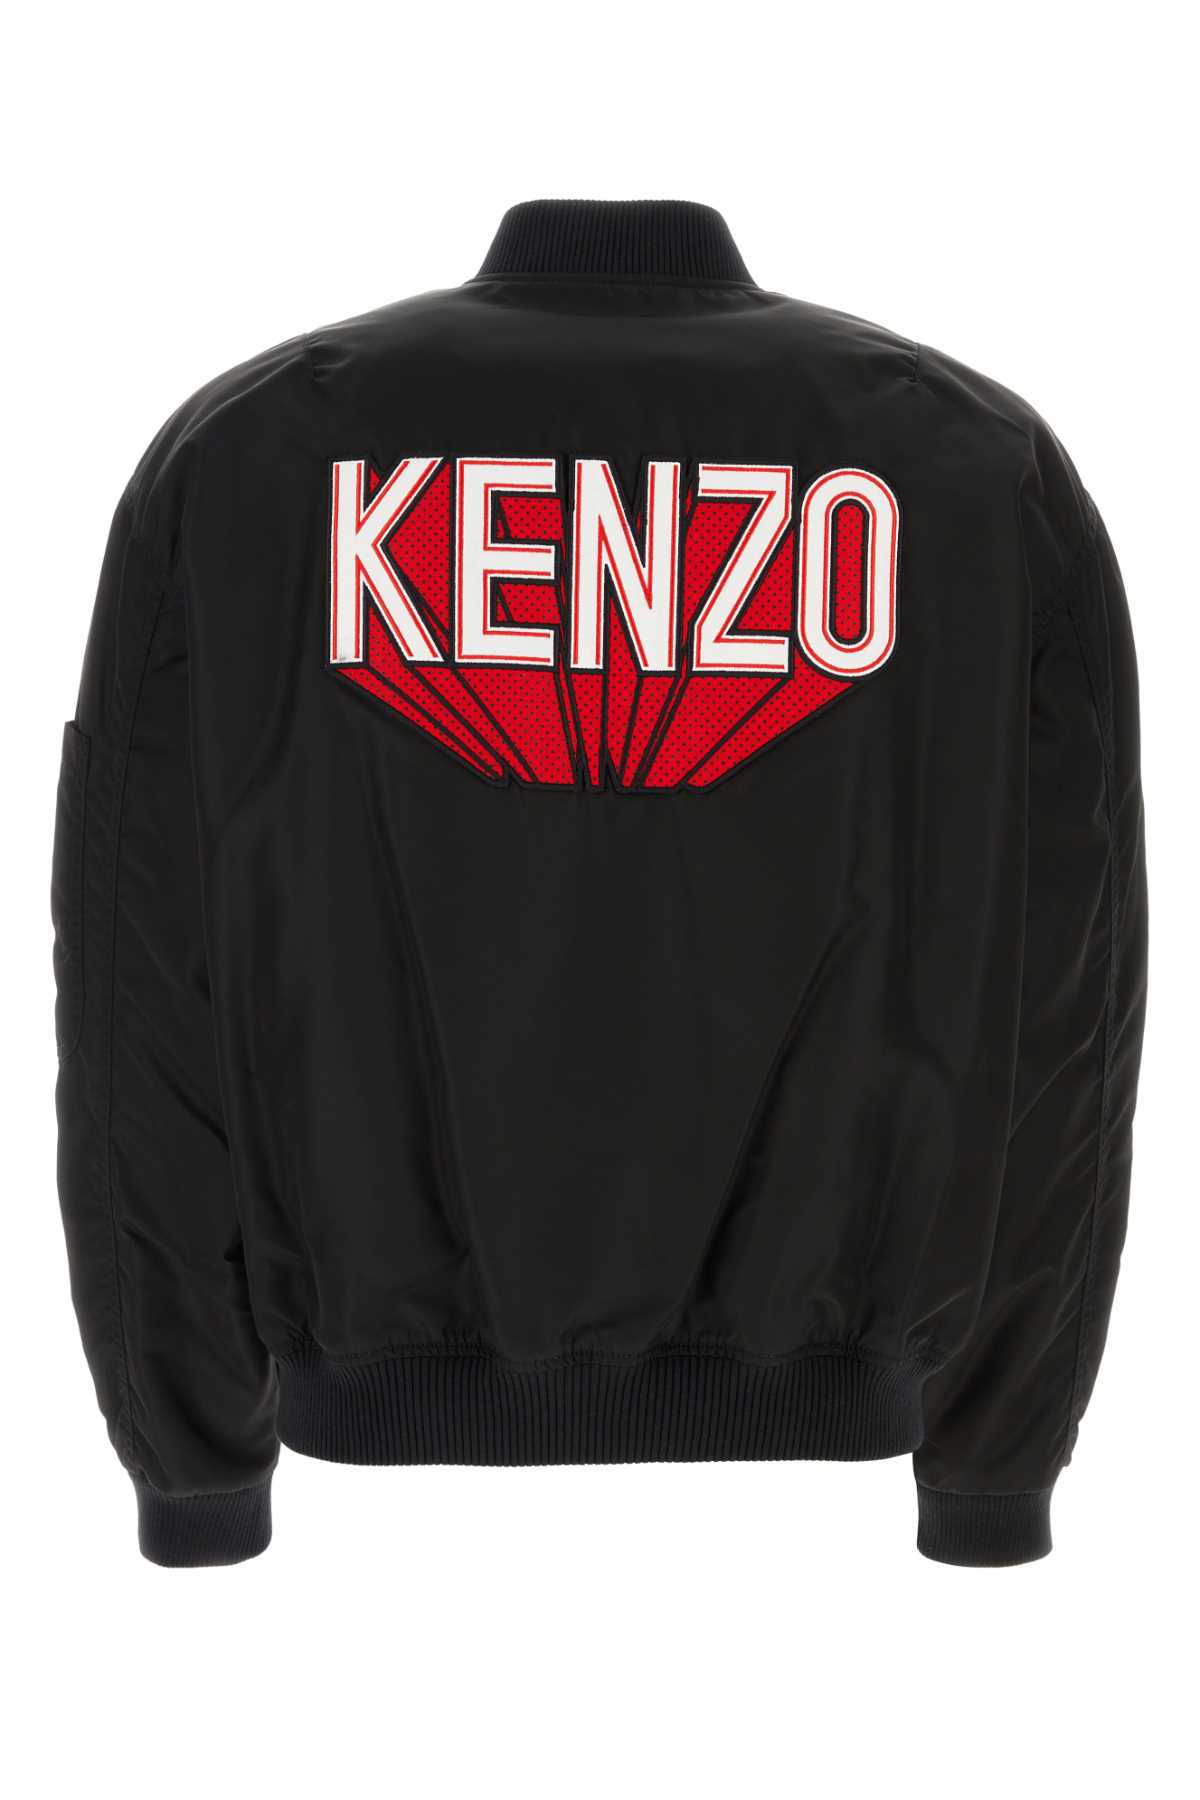 Kenzo Black Nylon Bomber Jacket